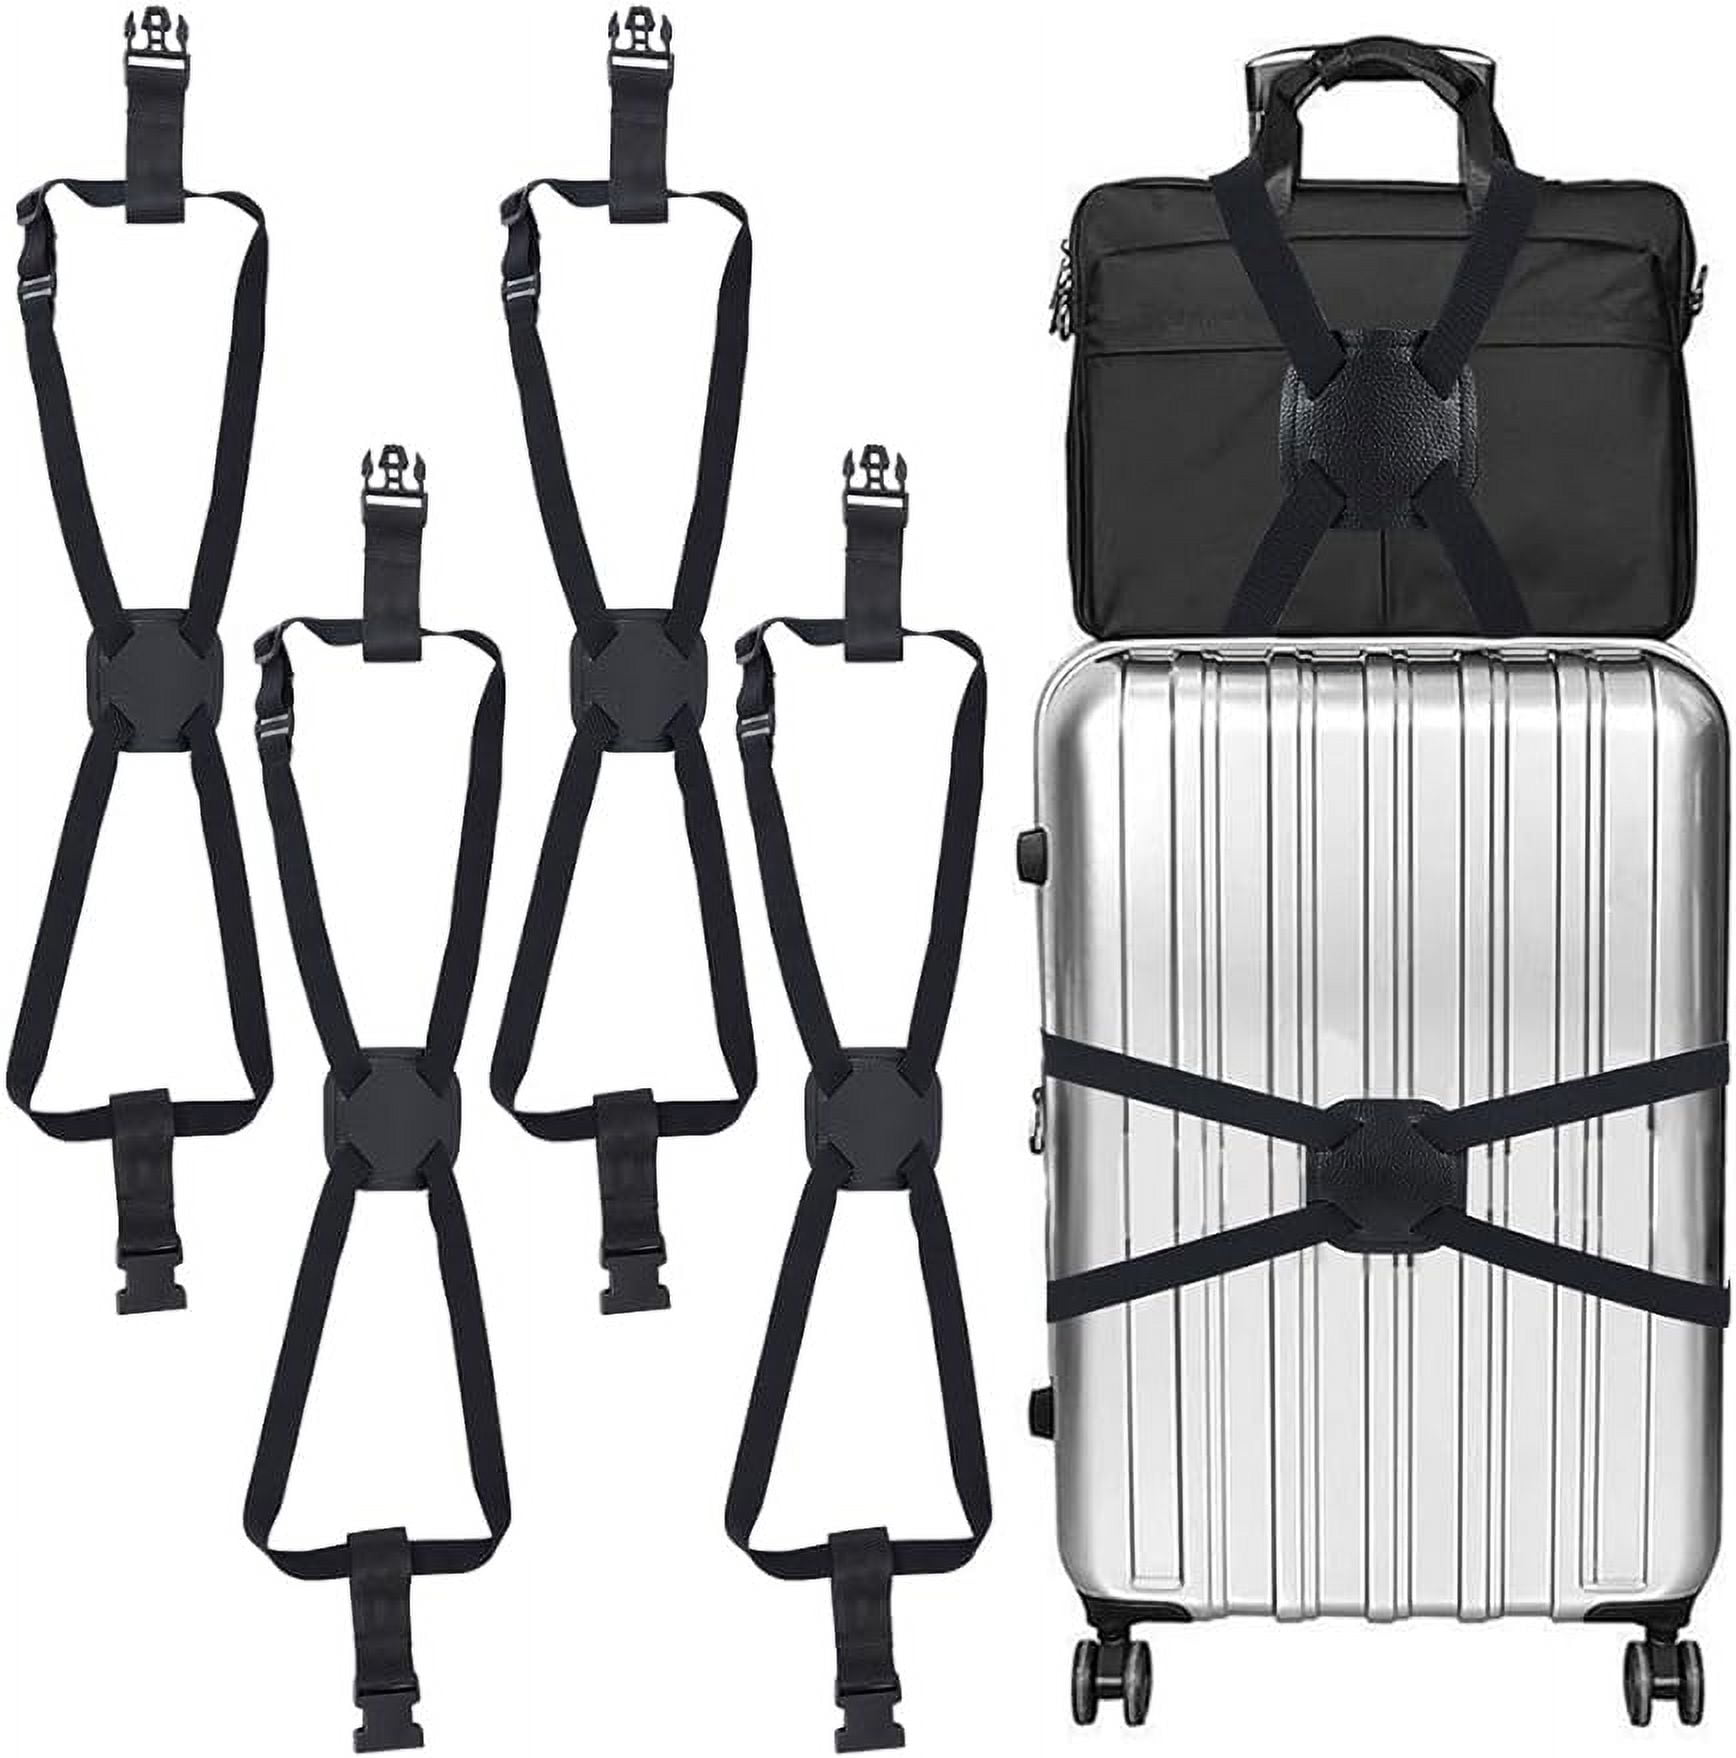 Adjustable Luggage Straps Black Elastic Suitcase Straps Luggage